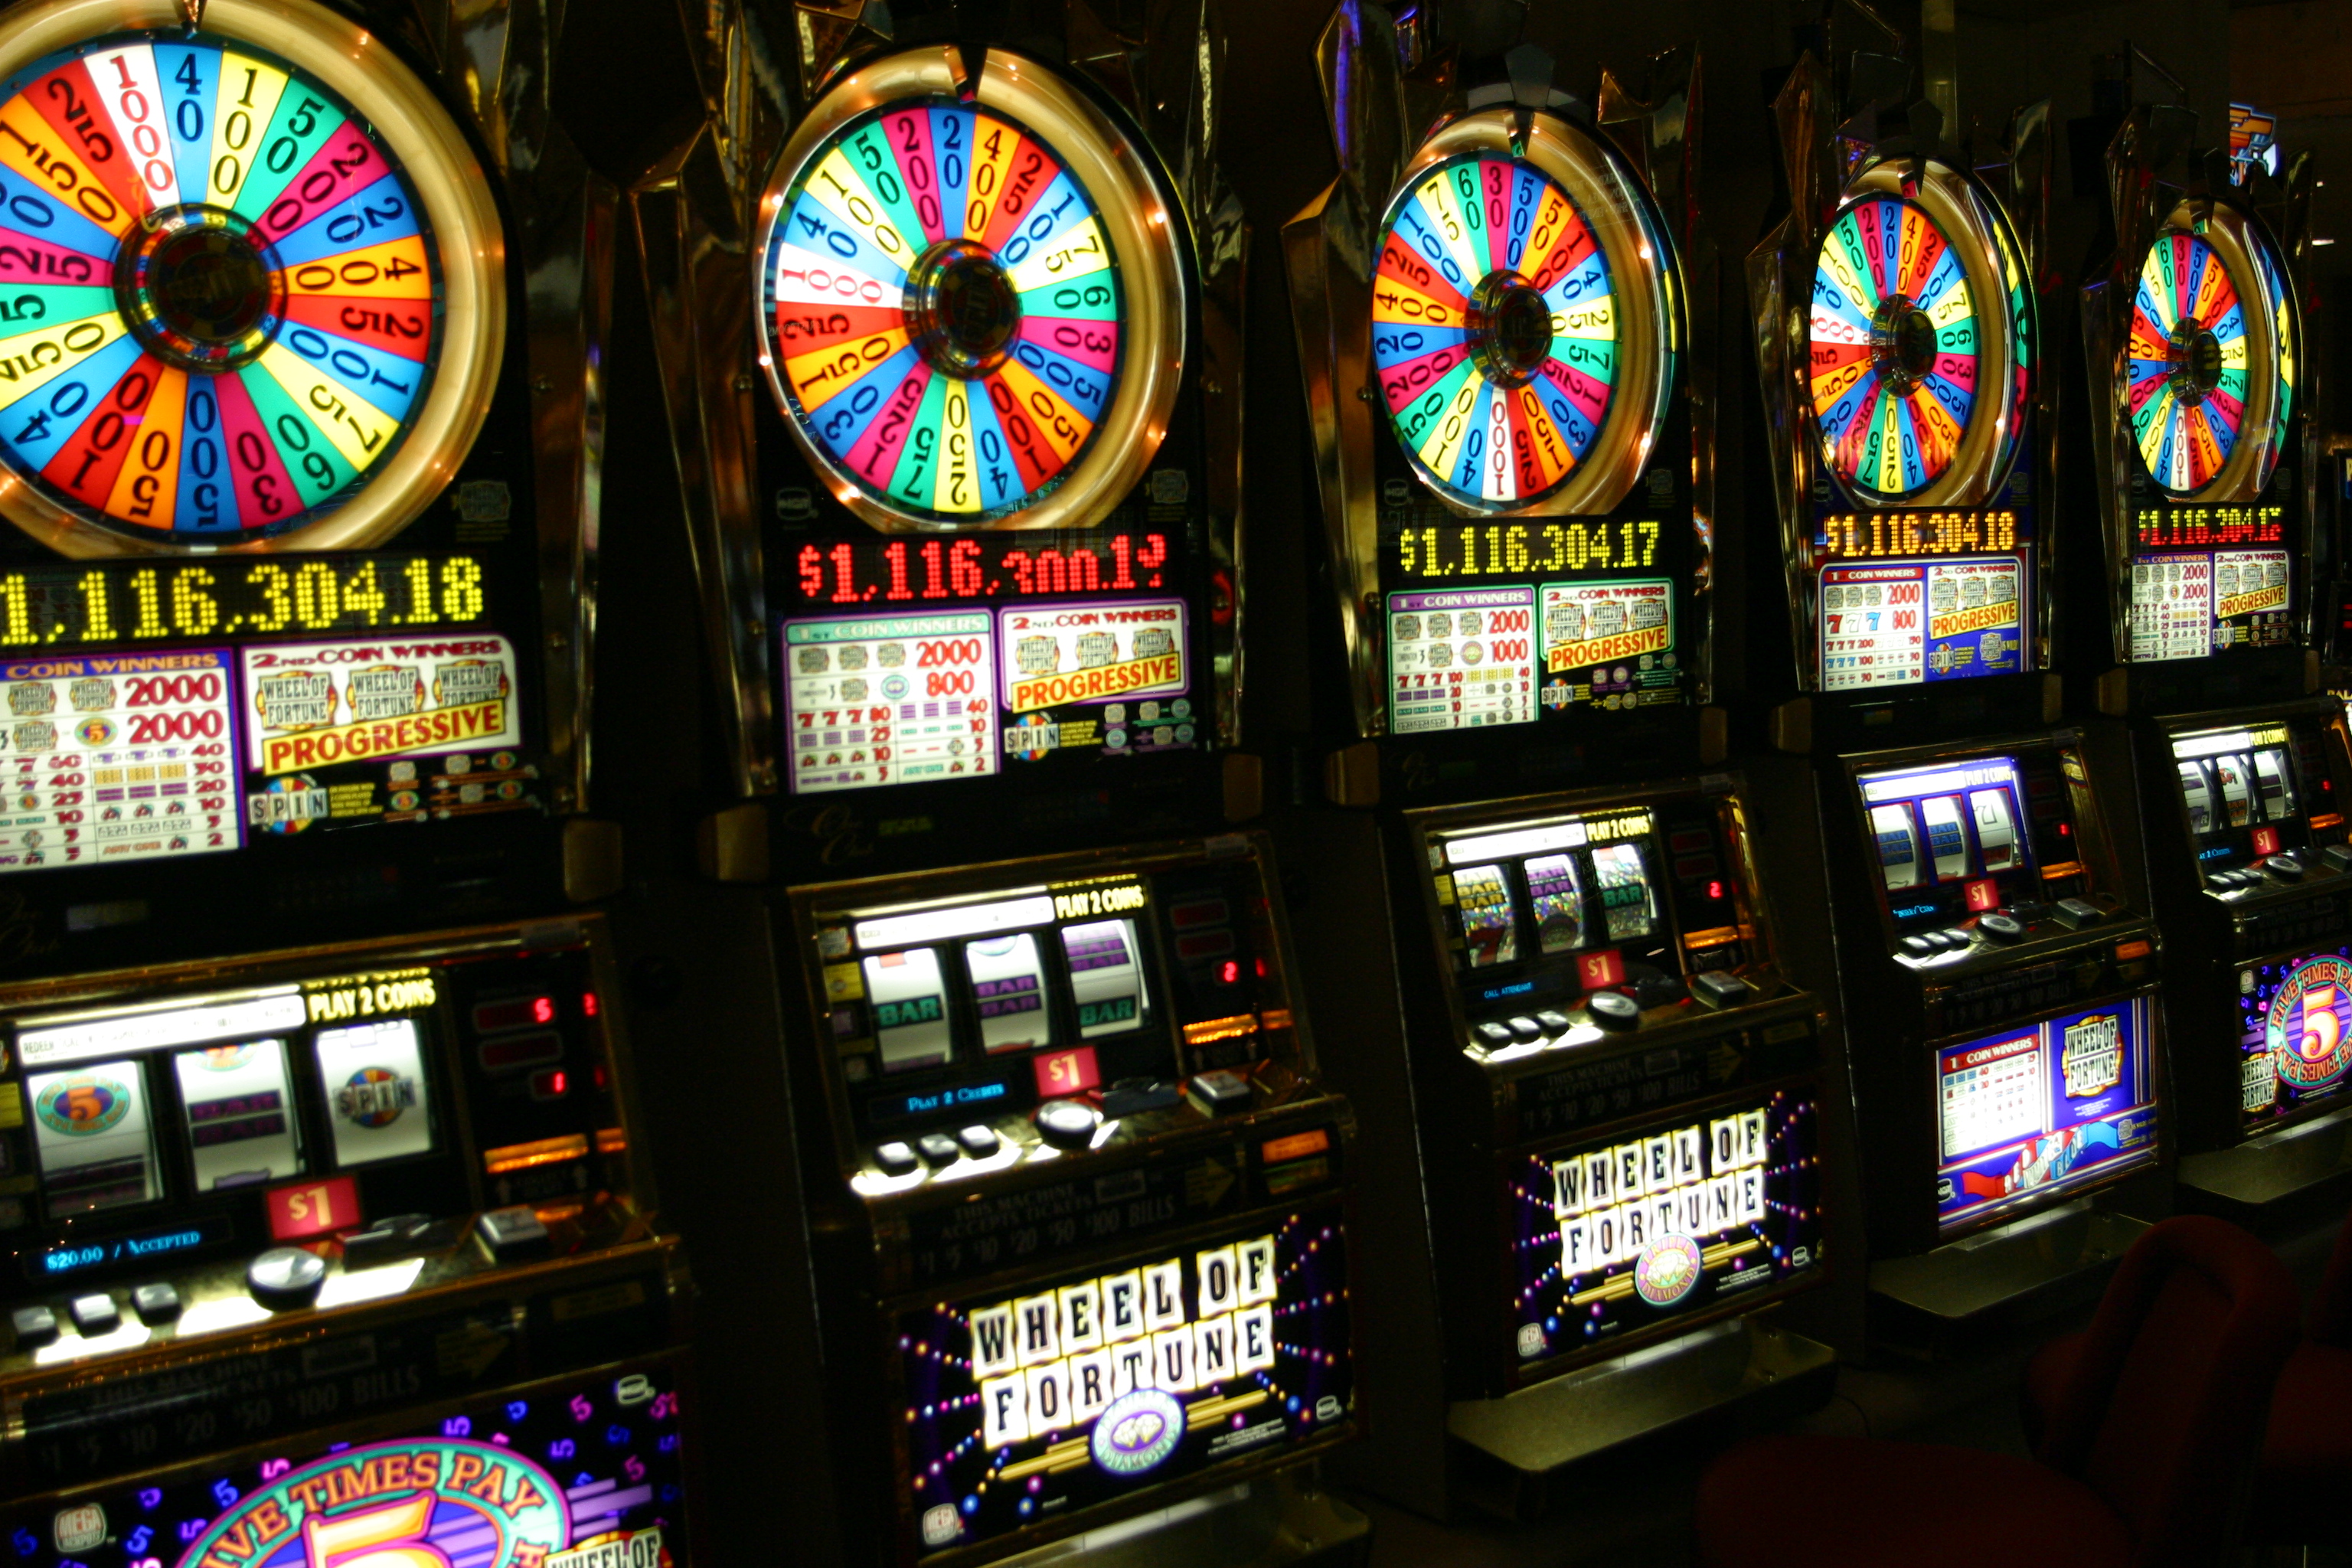 Jetzt können Sie das gewinne den Jackpot im Casino Ihrer Träume haben – billiger/schneller als Sie es sich je vorgestellt haben